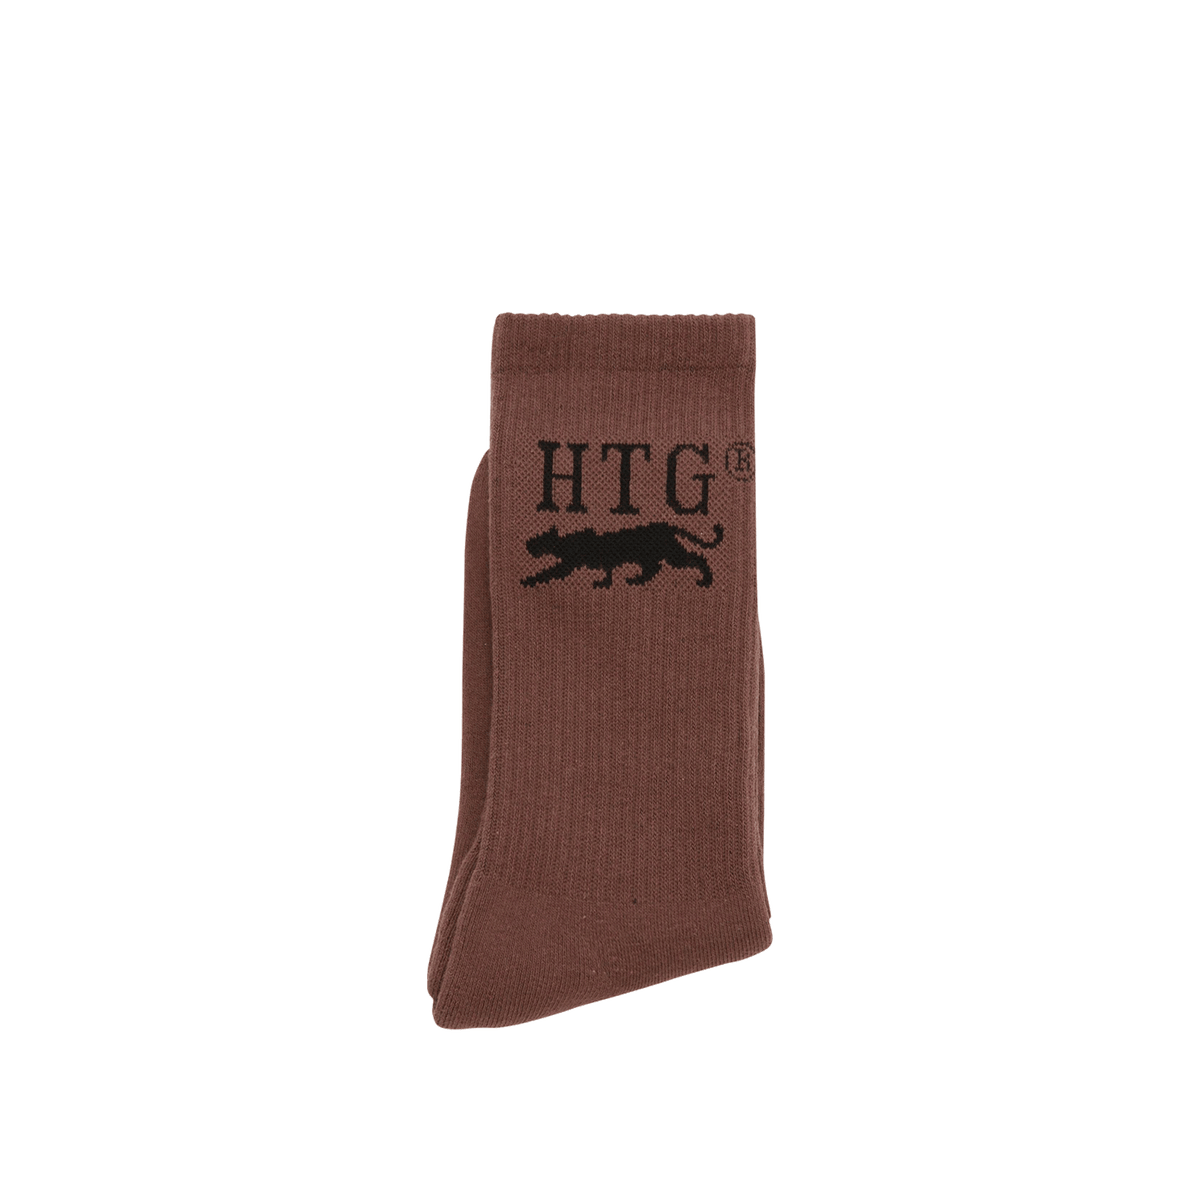 HTG Pack Socks - Hickory